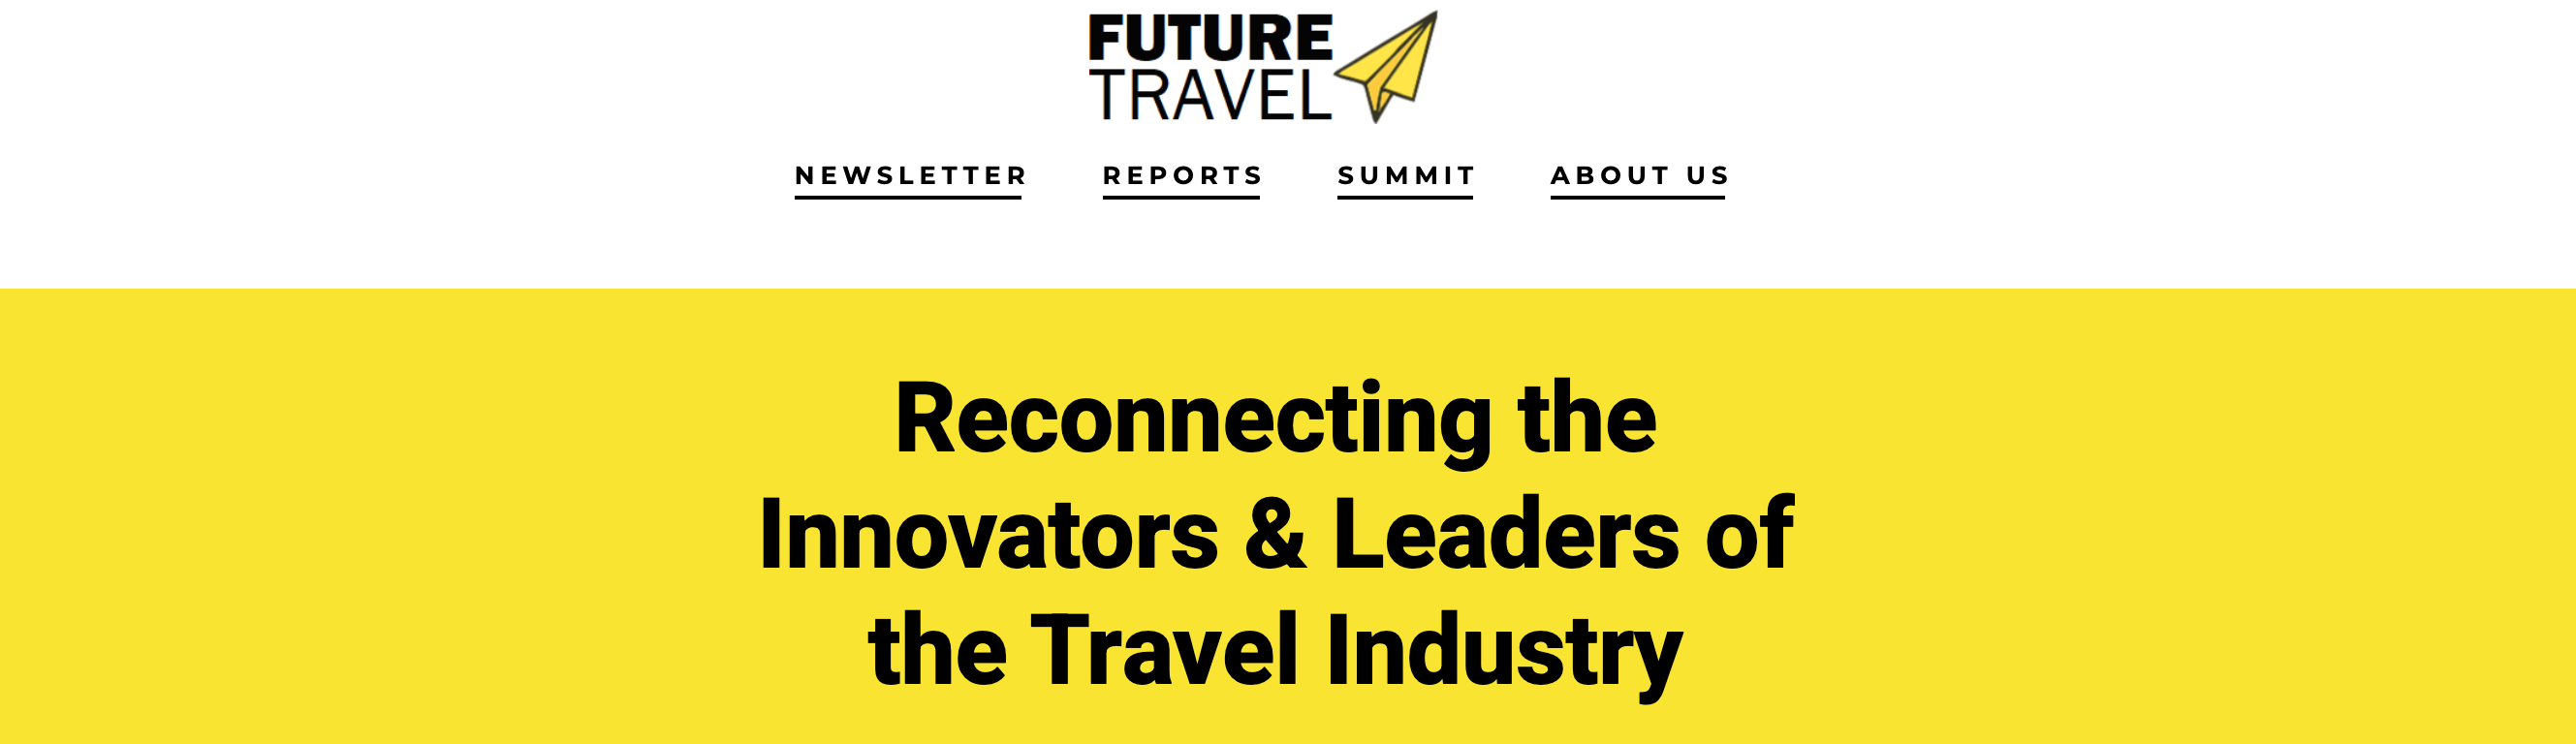 FutureTravel Summit